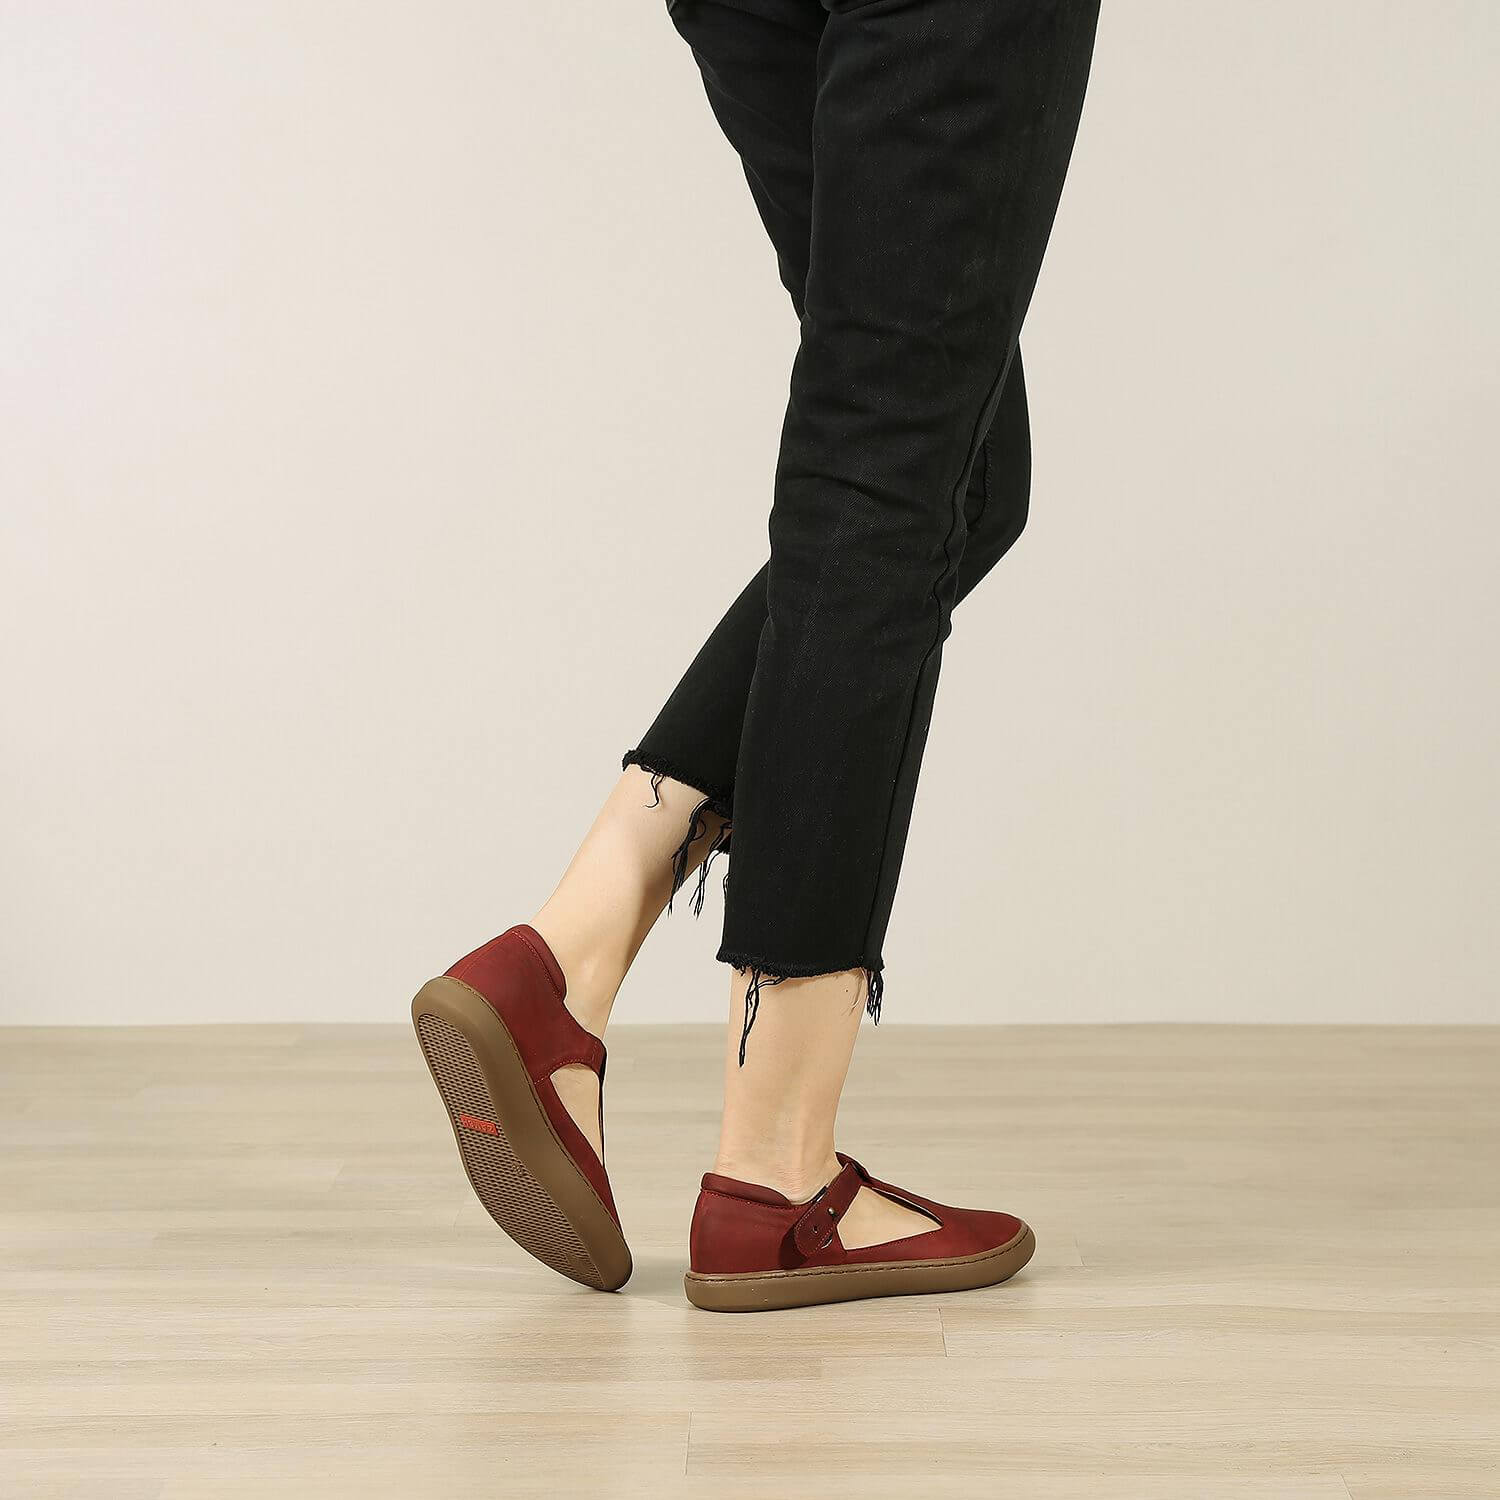 אישה נועלת נעלי בלרינה שטוחות מעור איטלקי בצבע בורדו - דגם איימי 8743